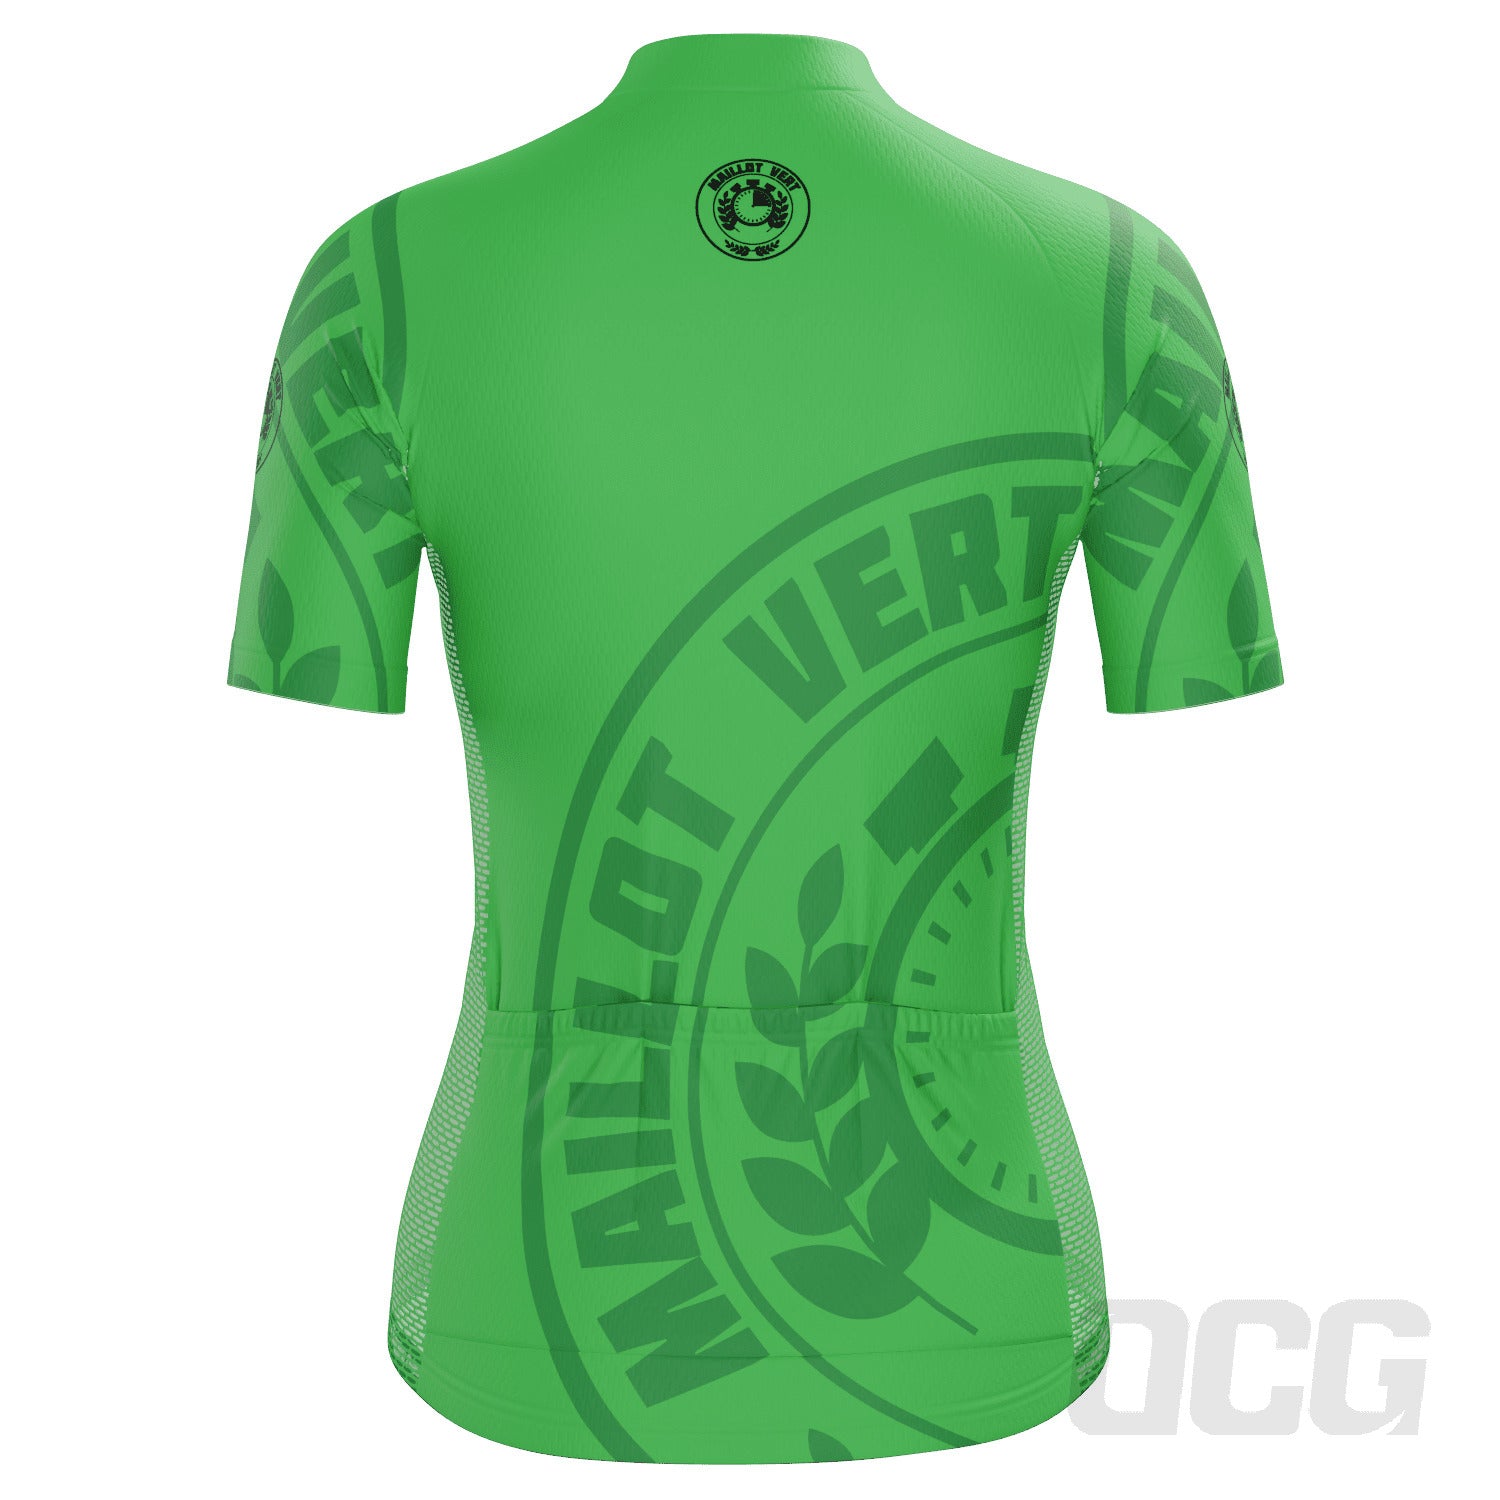 Women's Green Sprinters Maillot Vert Short Sleeve Cycling Jersey